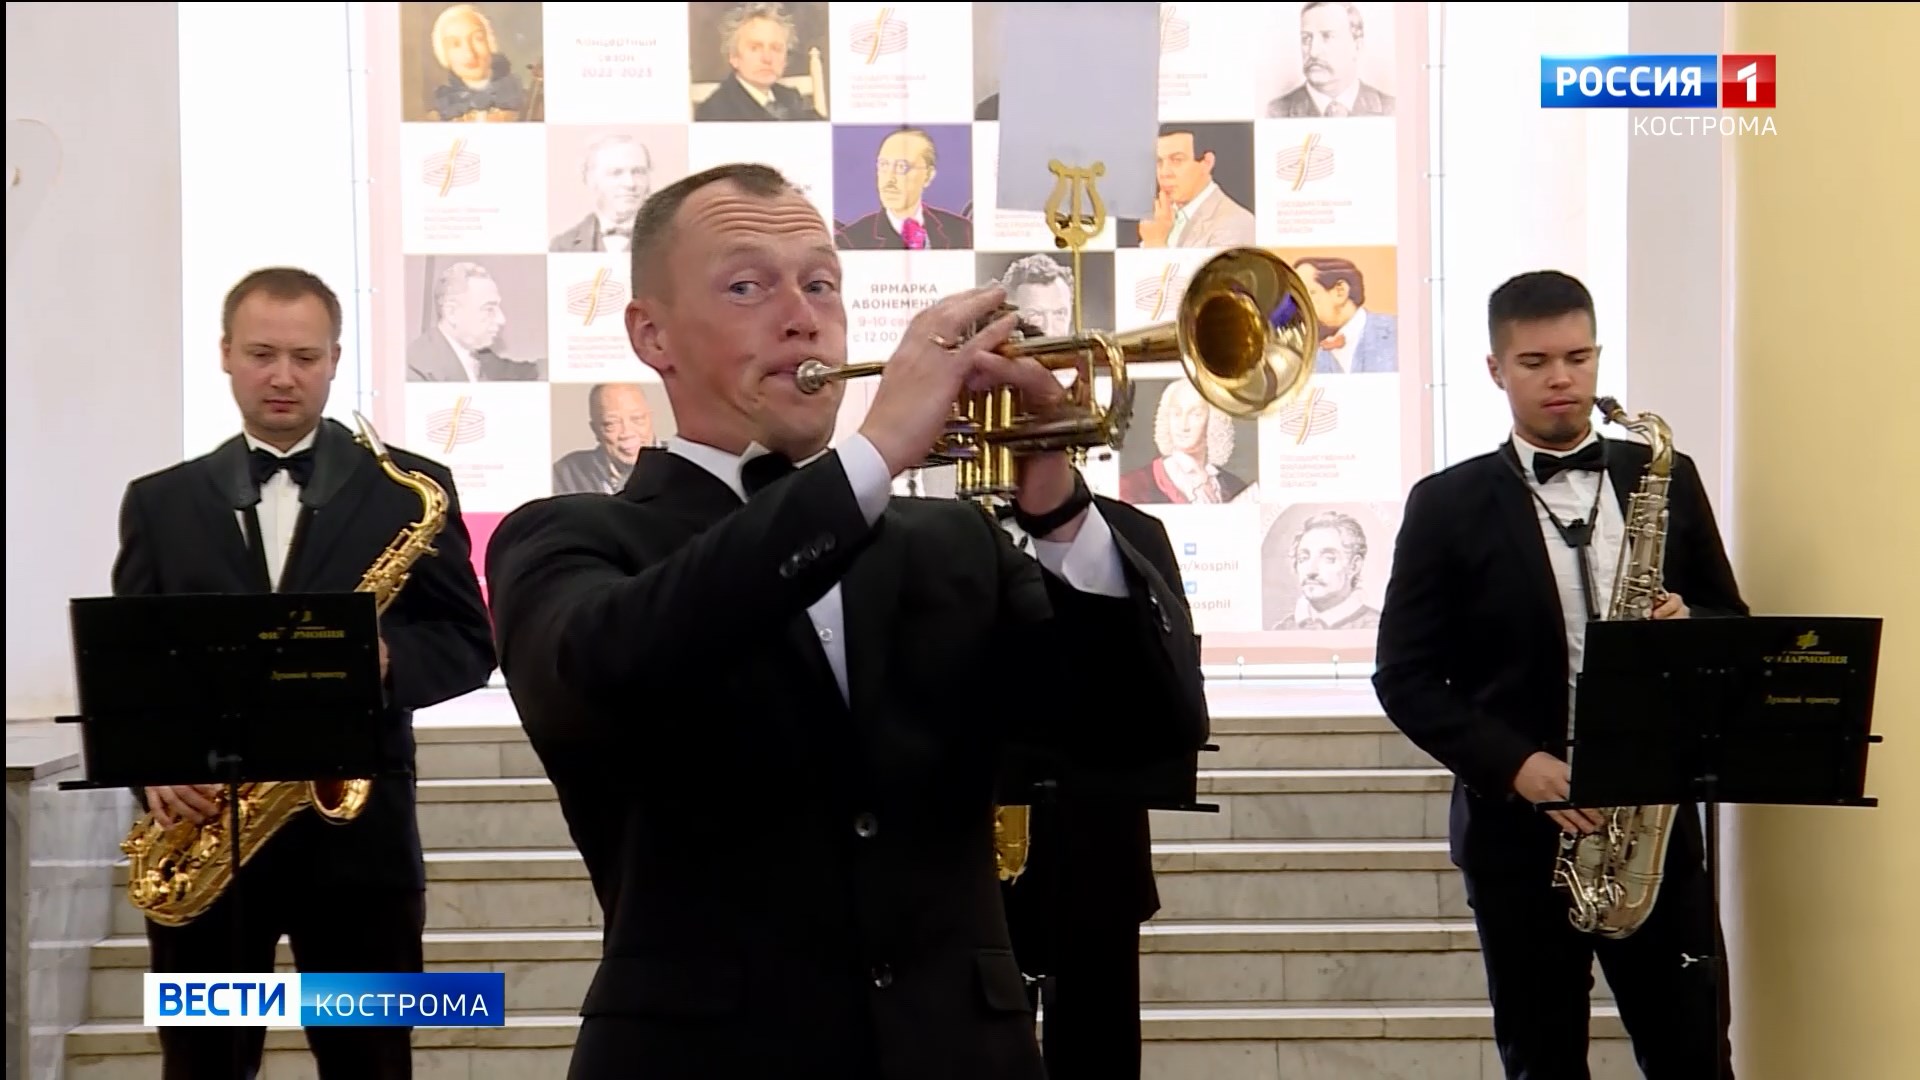 Костромская Филармония приглашает горожан на ярмарку абонементов